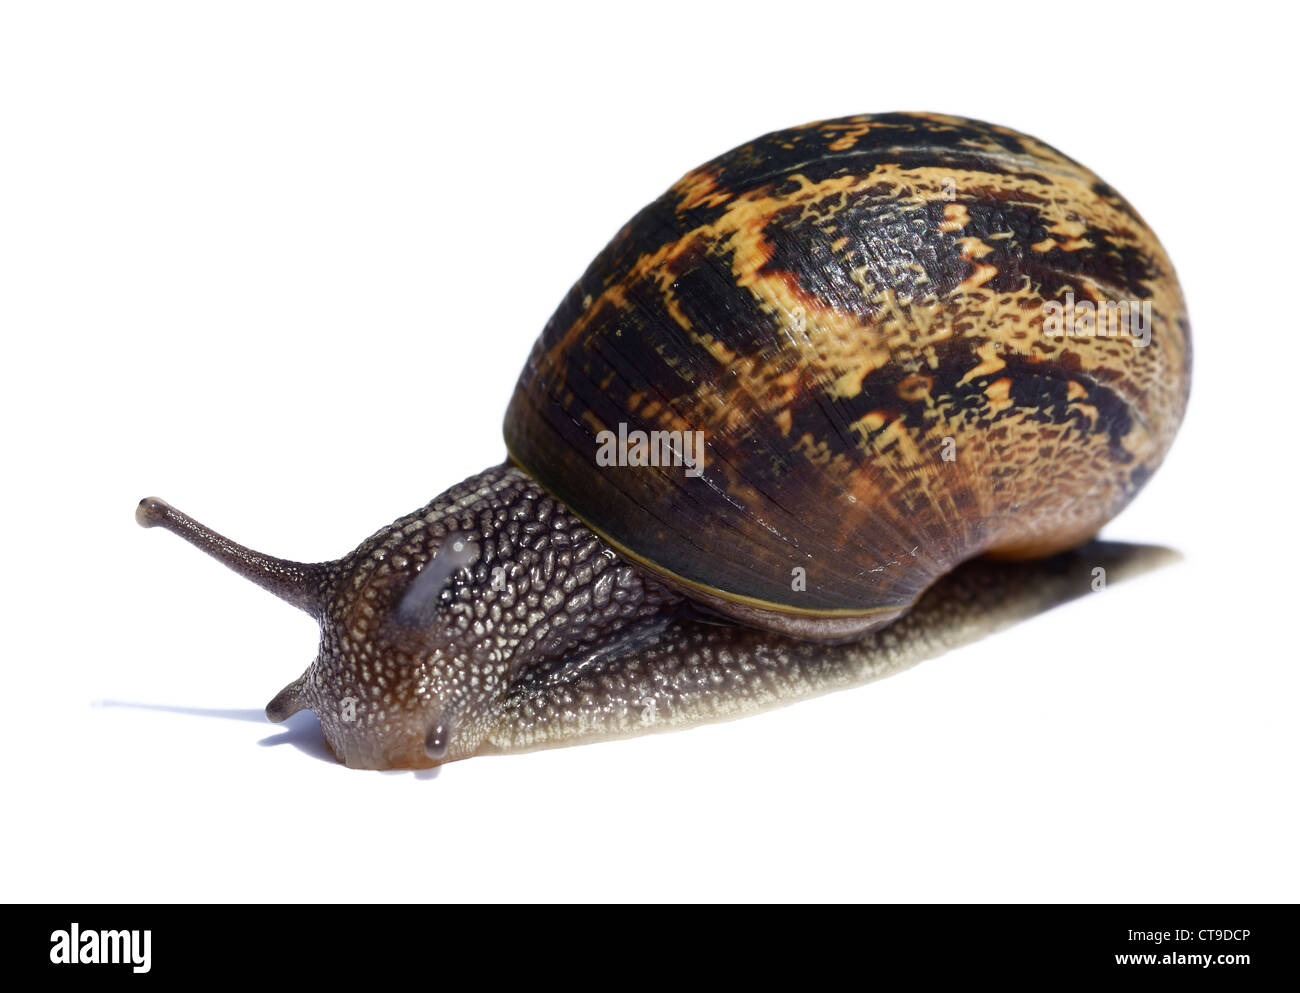 Common brown garden snail Stock Photo